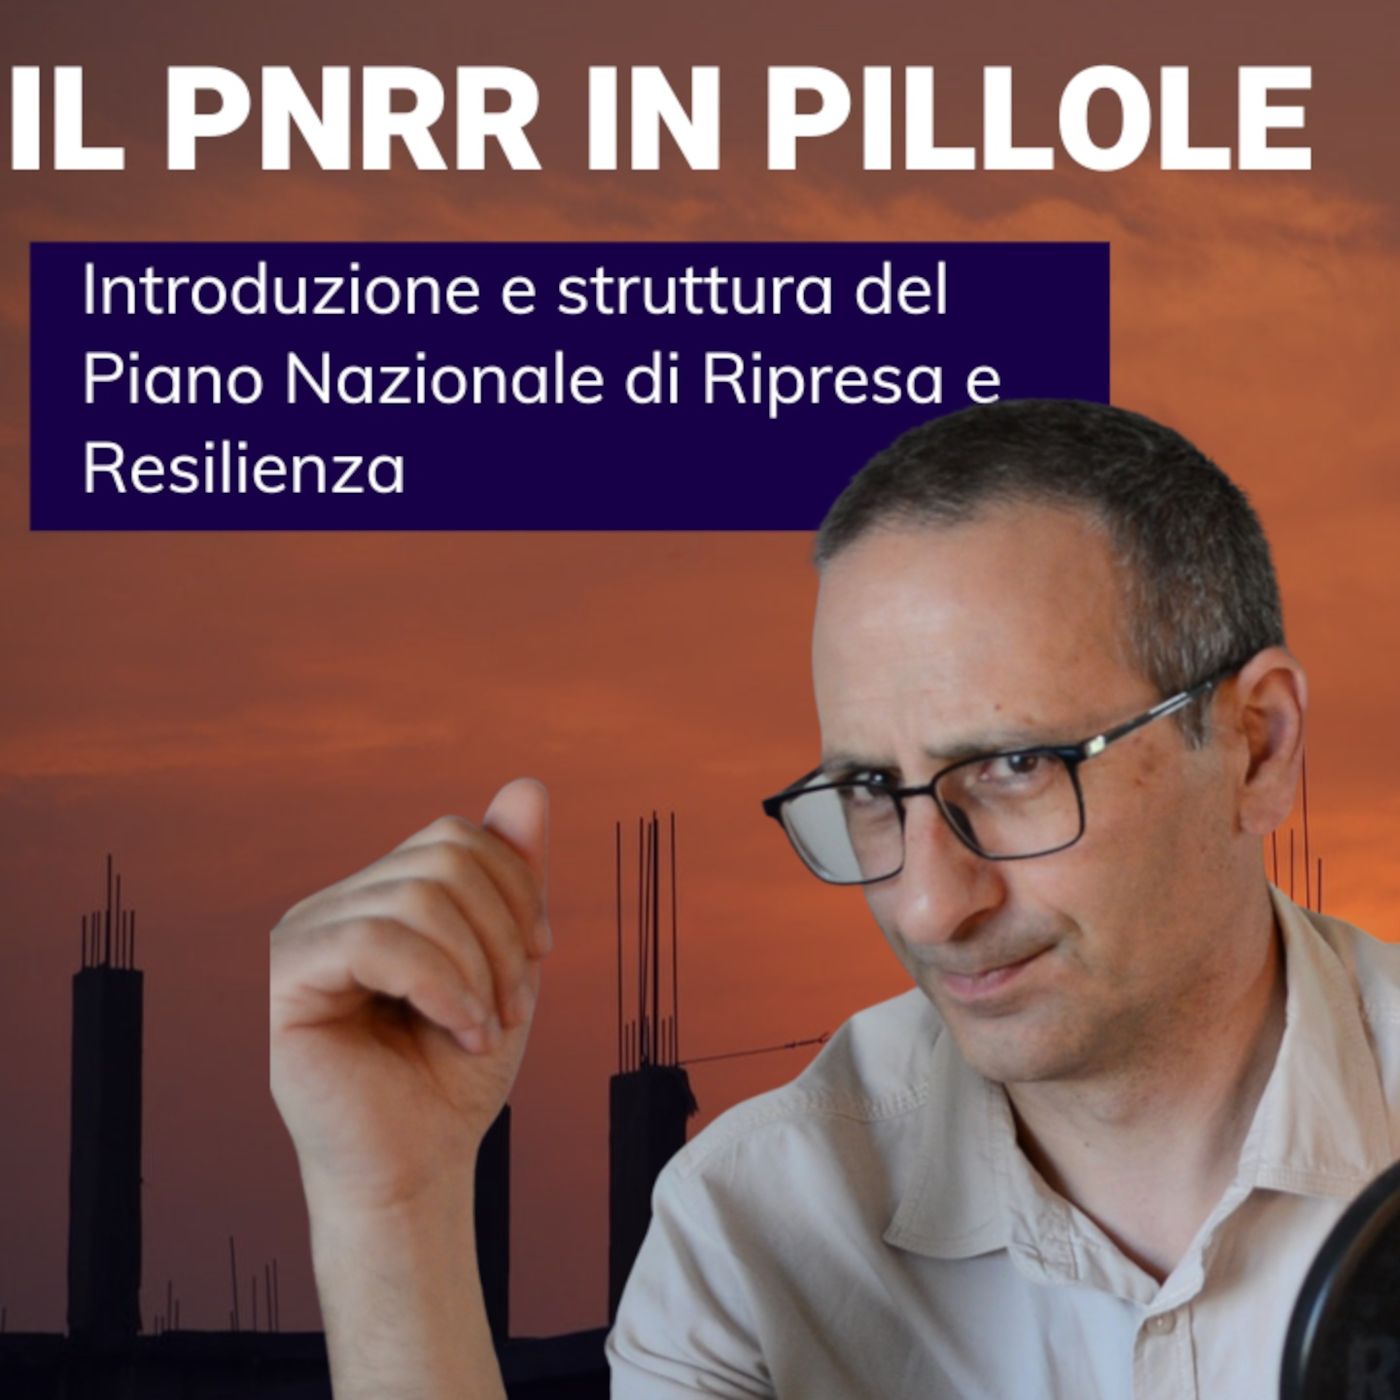 Il PNRR italiano in pillole, introduzione e struttura del Piano Nazionale di Ripresa e Resilienza